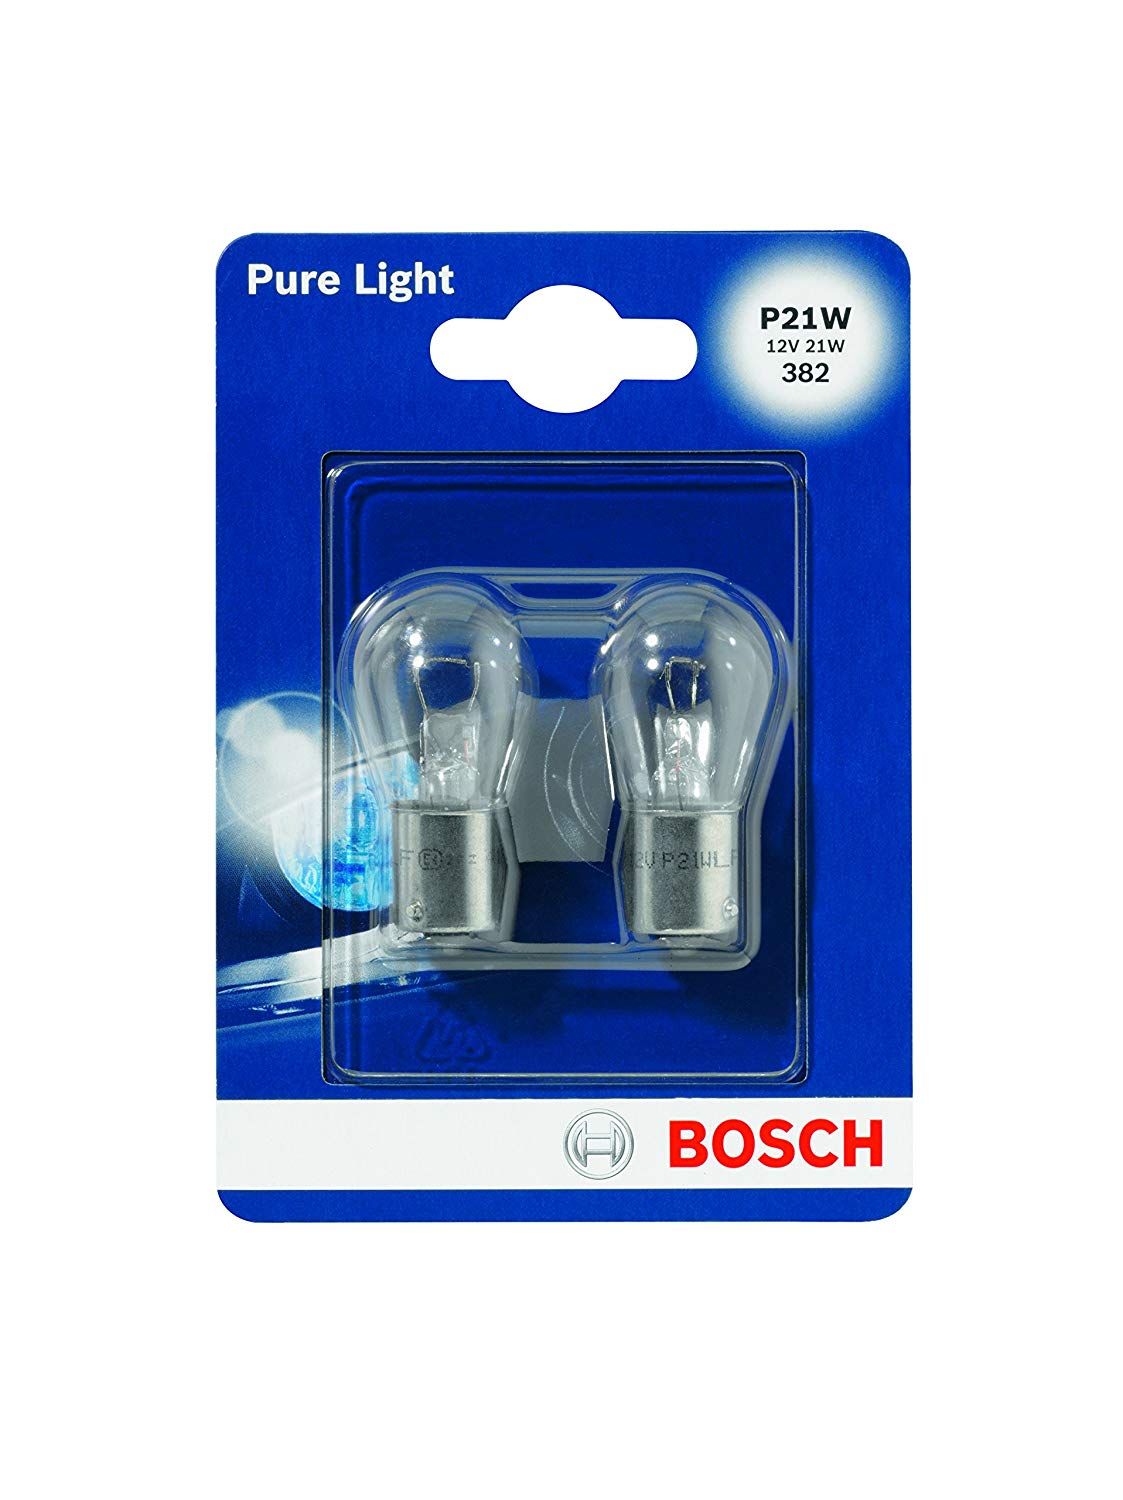 Pack de 2 bombillas Bosch solo 1,9€